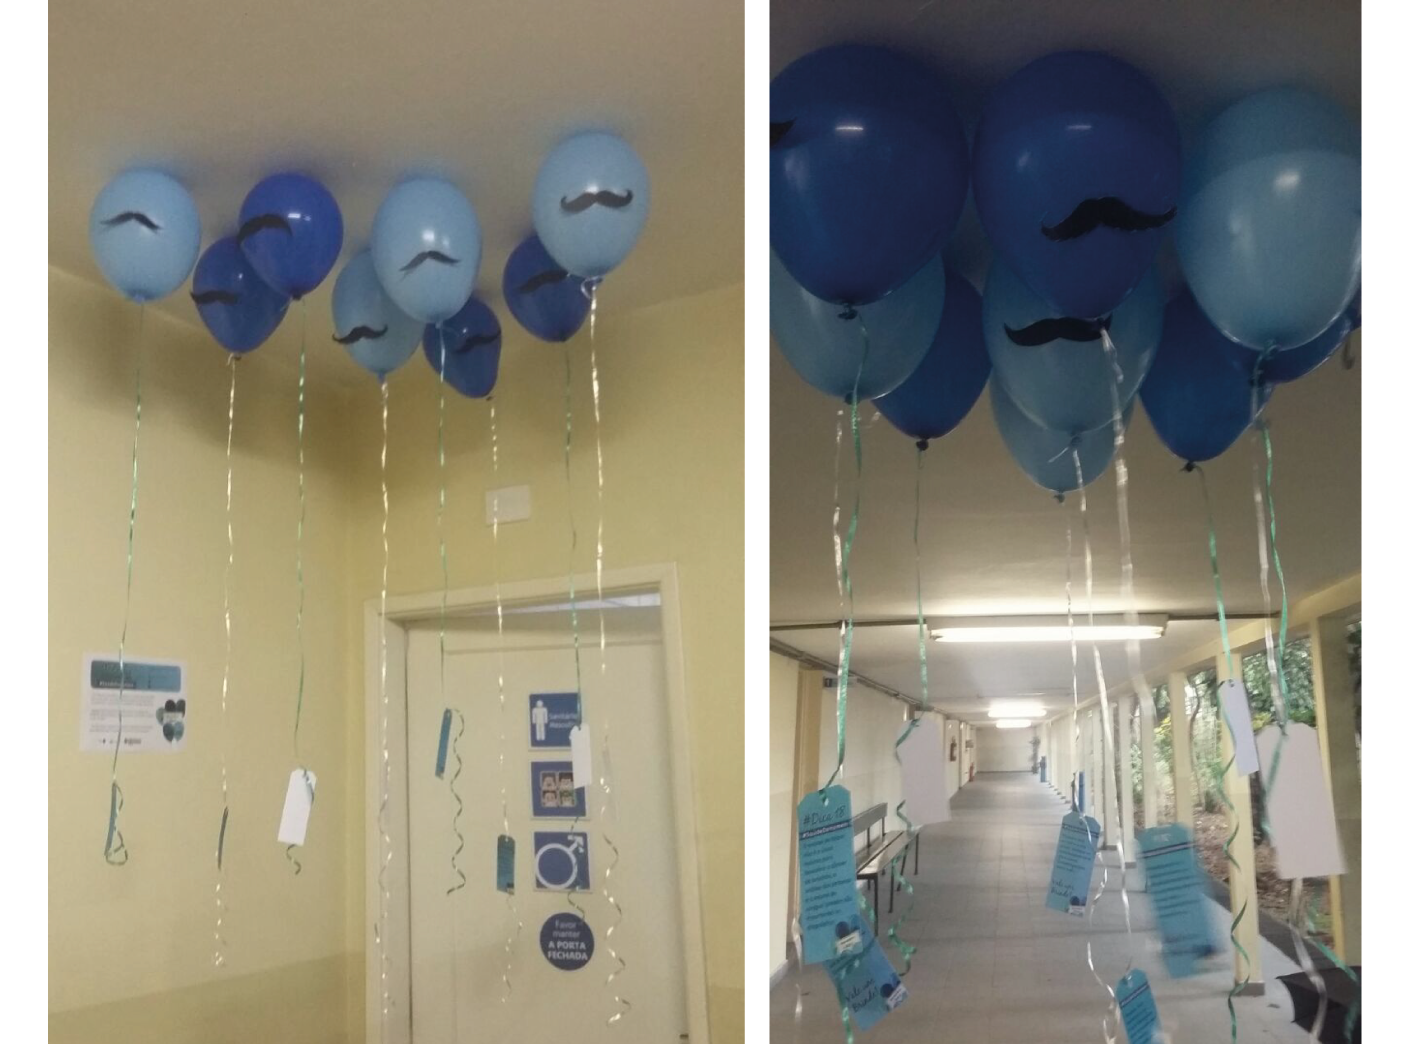 (descrição da imagem: Fotos da decoração do prédio do CEDEPS com bexigas azuis com bigodes)